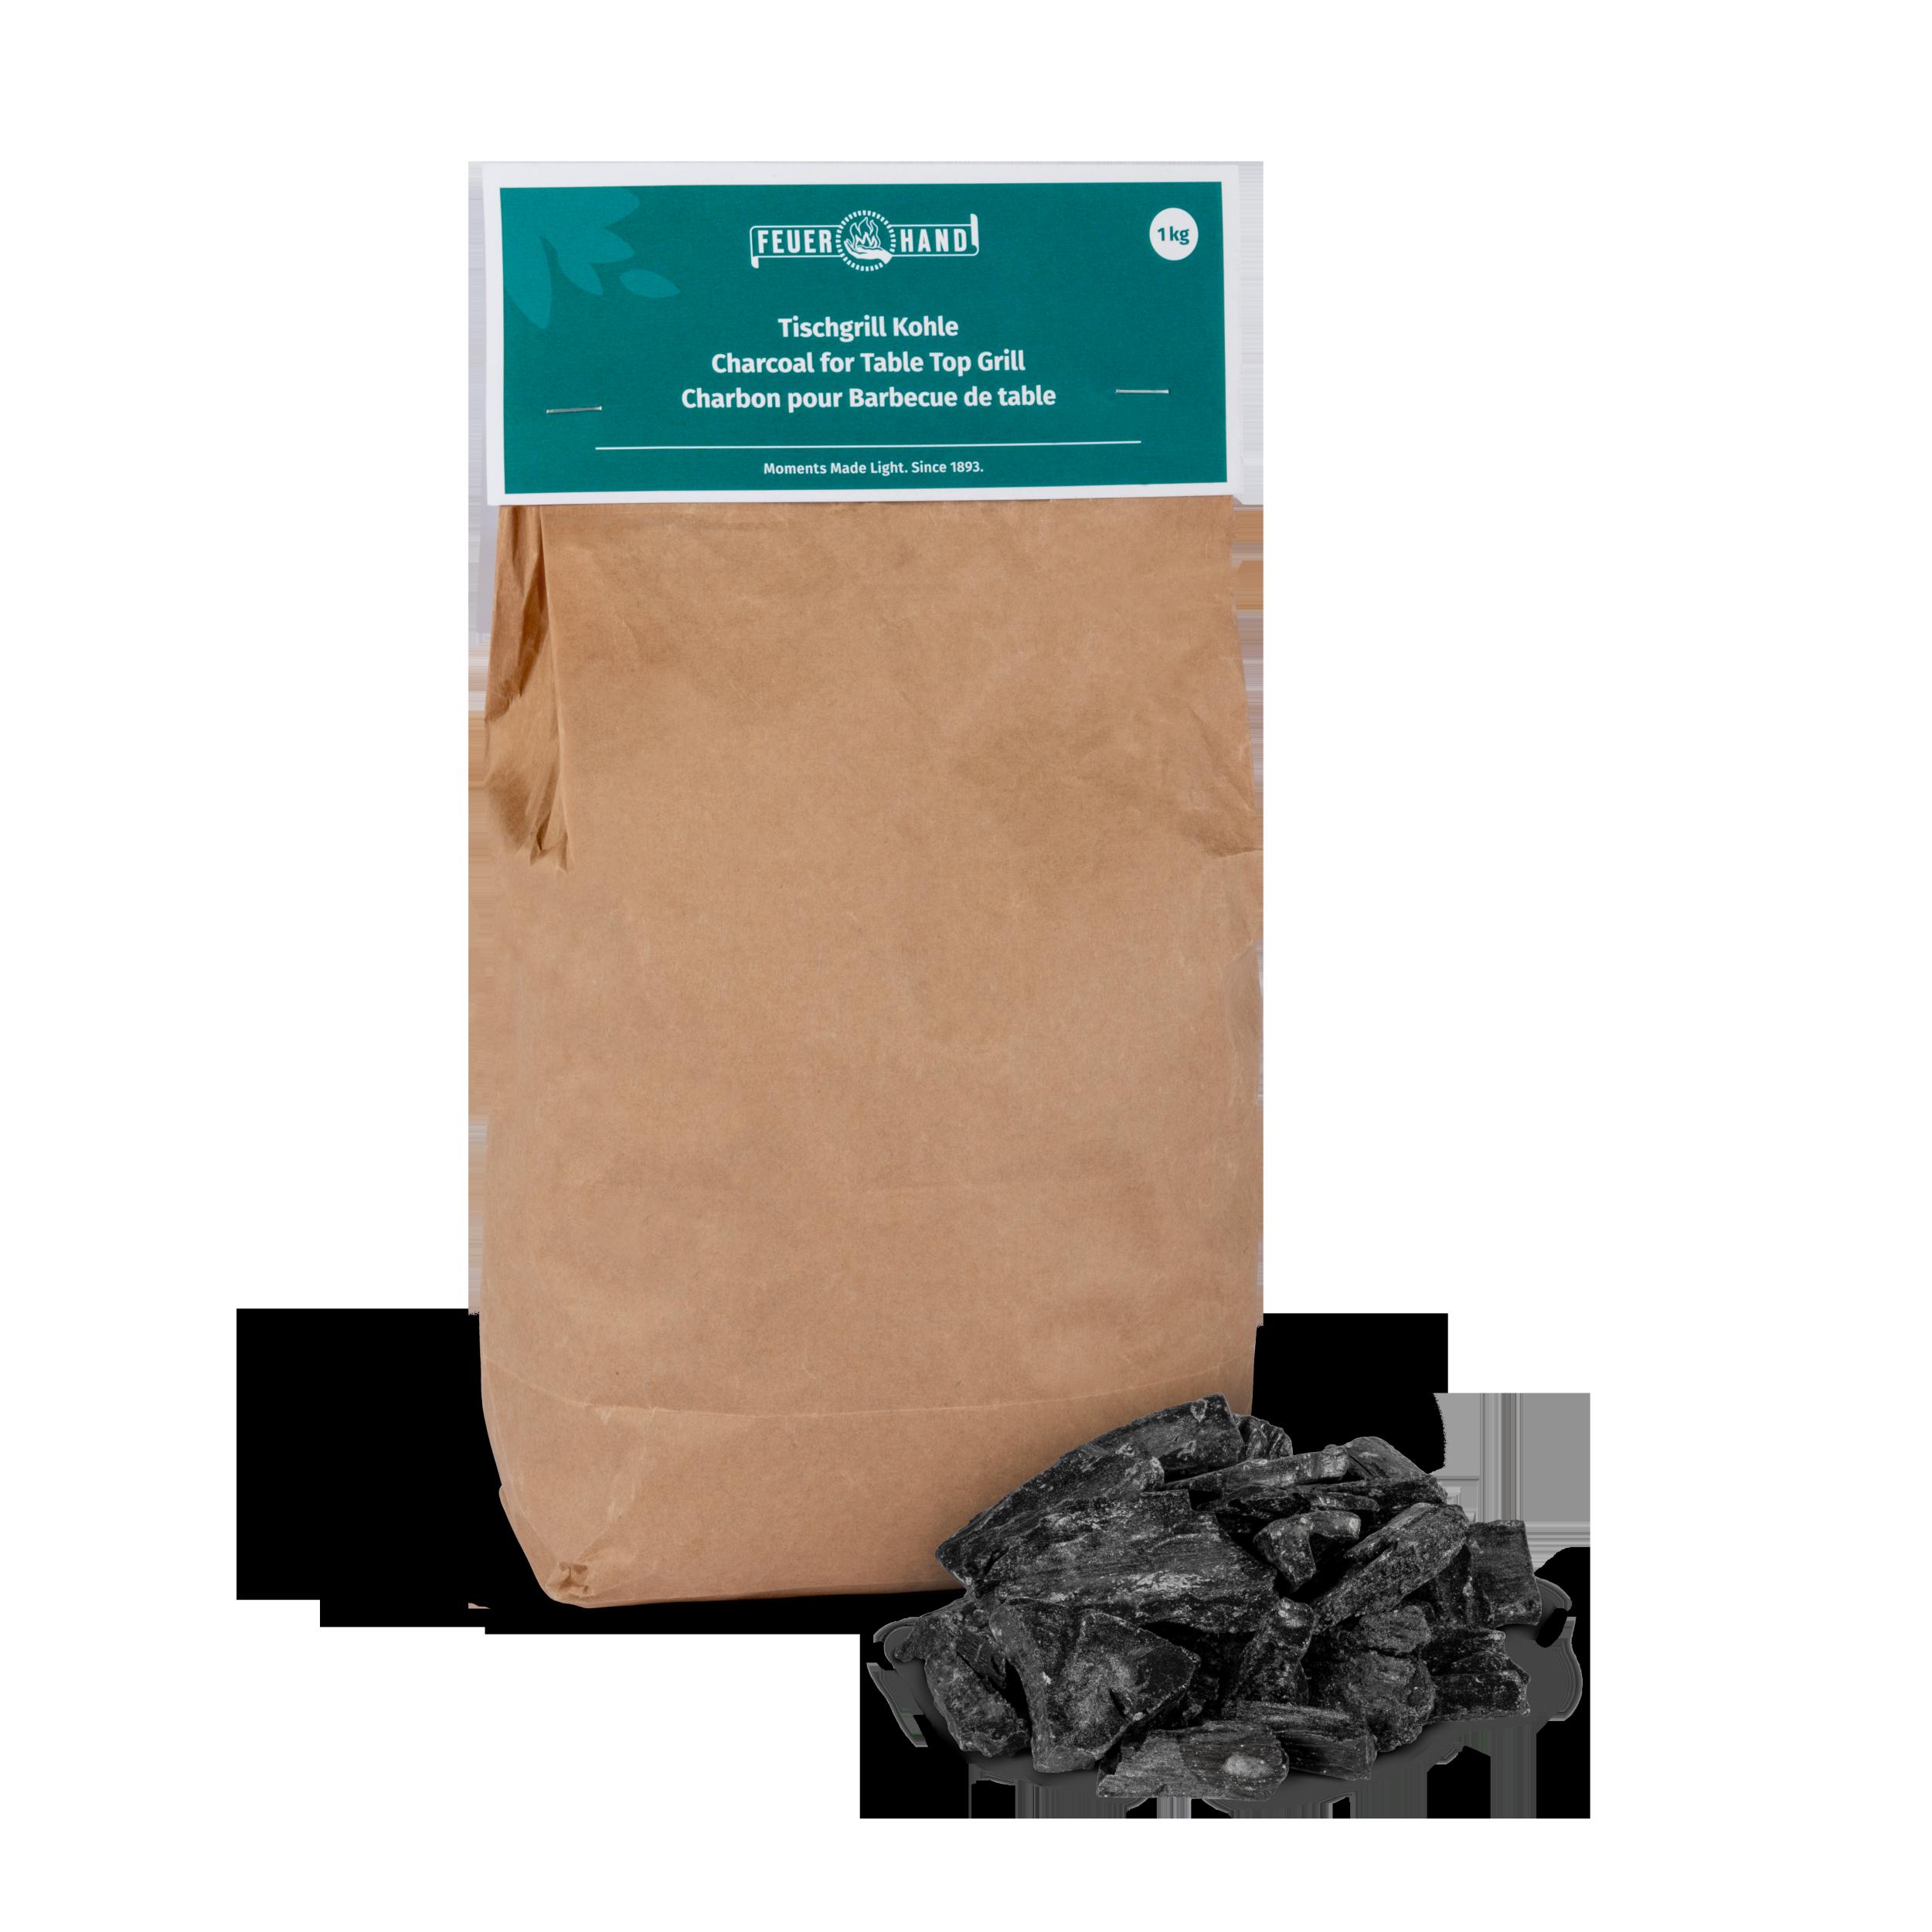 Feuerhand Tischgrill Kohle - Spezial-Kohle für die Feuerhand Tischgrills, Gebinde 1 kg